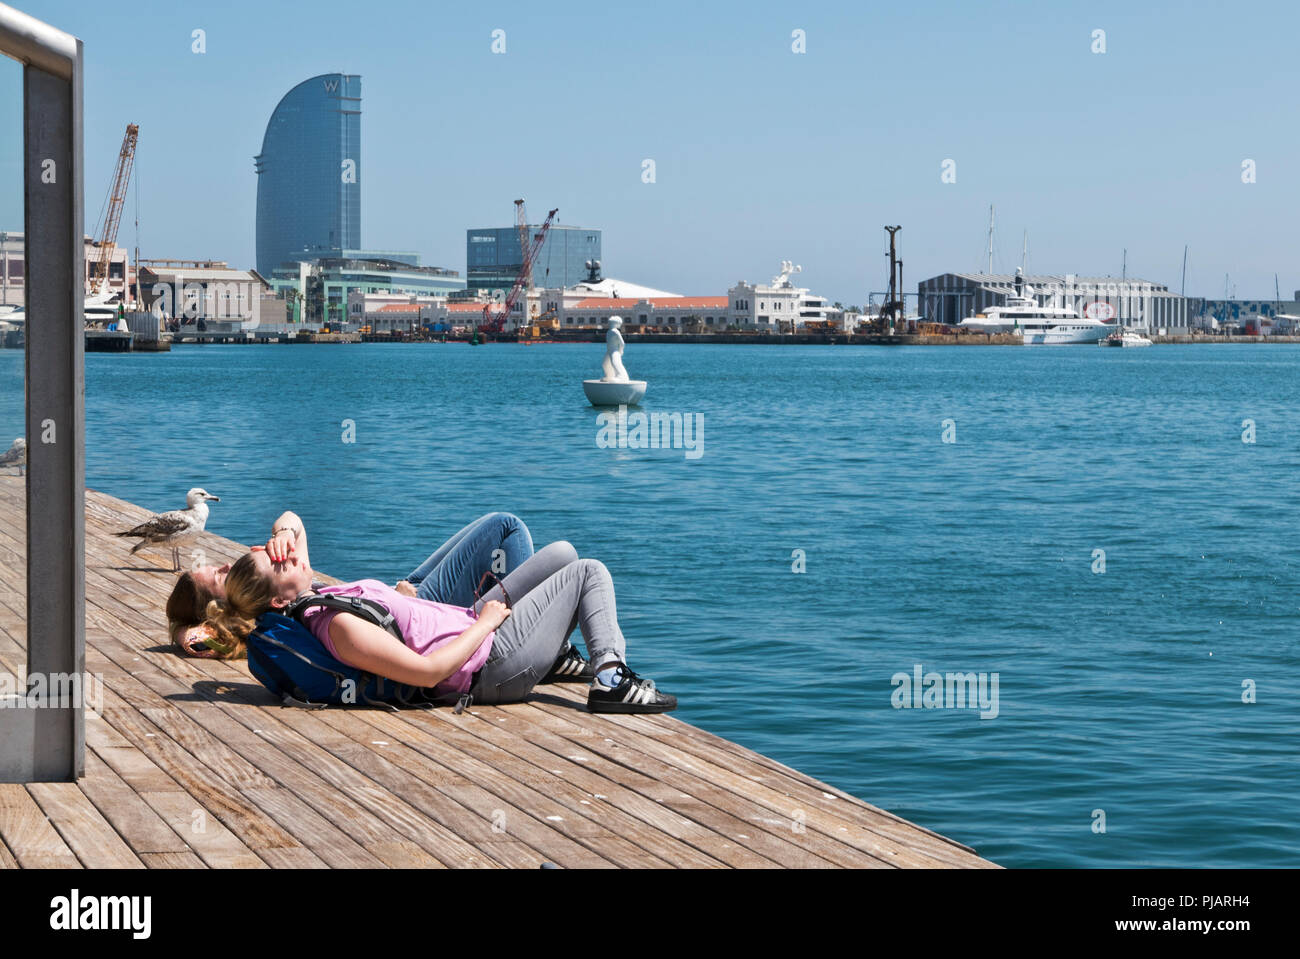 Deux jeunes femmes se trouvant sur le plancher en bois par le bord de la jetée du Port Vell, Barcelone, Espagne Banque D'Images